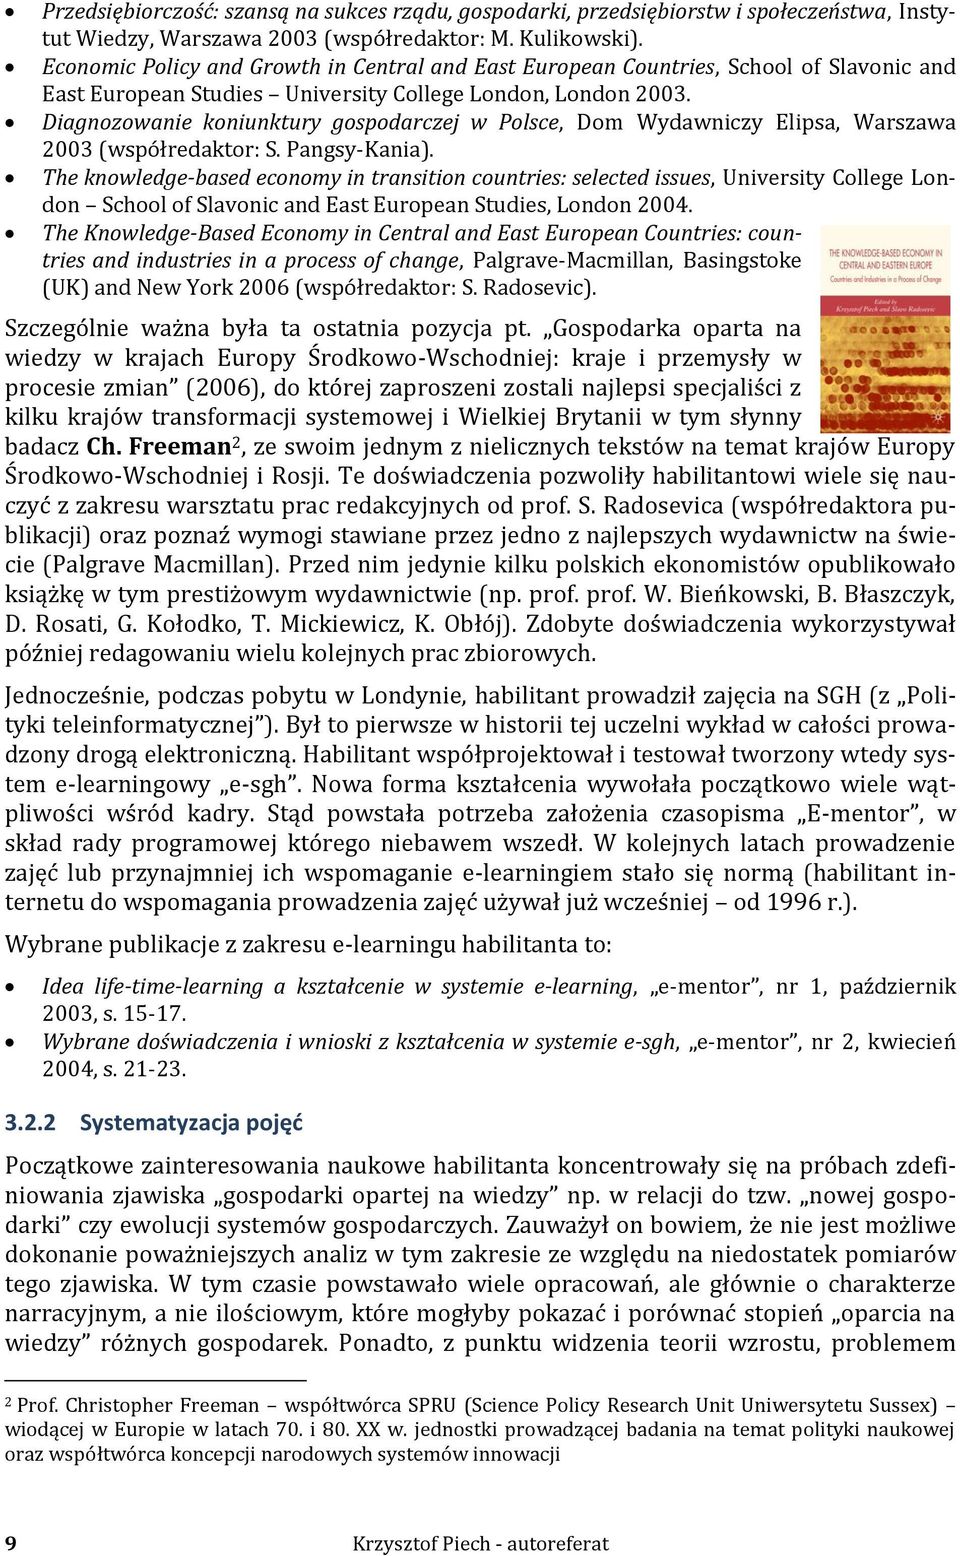 Diagnozowanie koniunktury gospodarczej w Polsce, Dom Wydawniczy Elipsa, Warszawa 2003 (współredaktor: S. Pangsy-Kania).